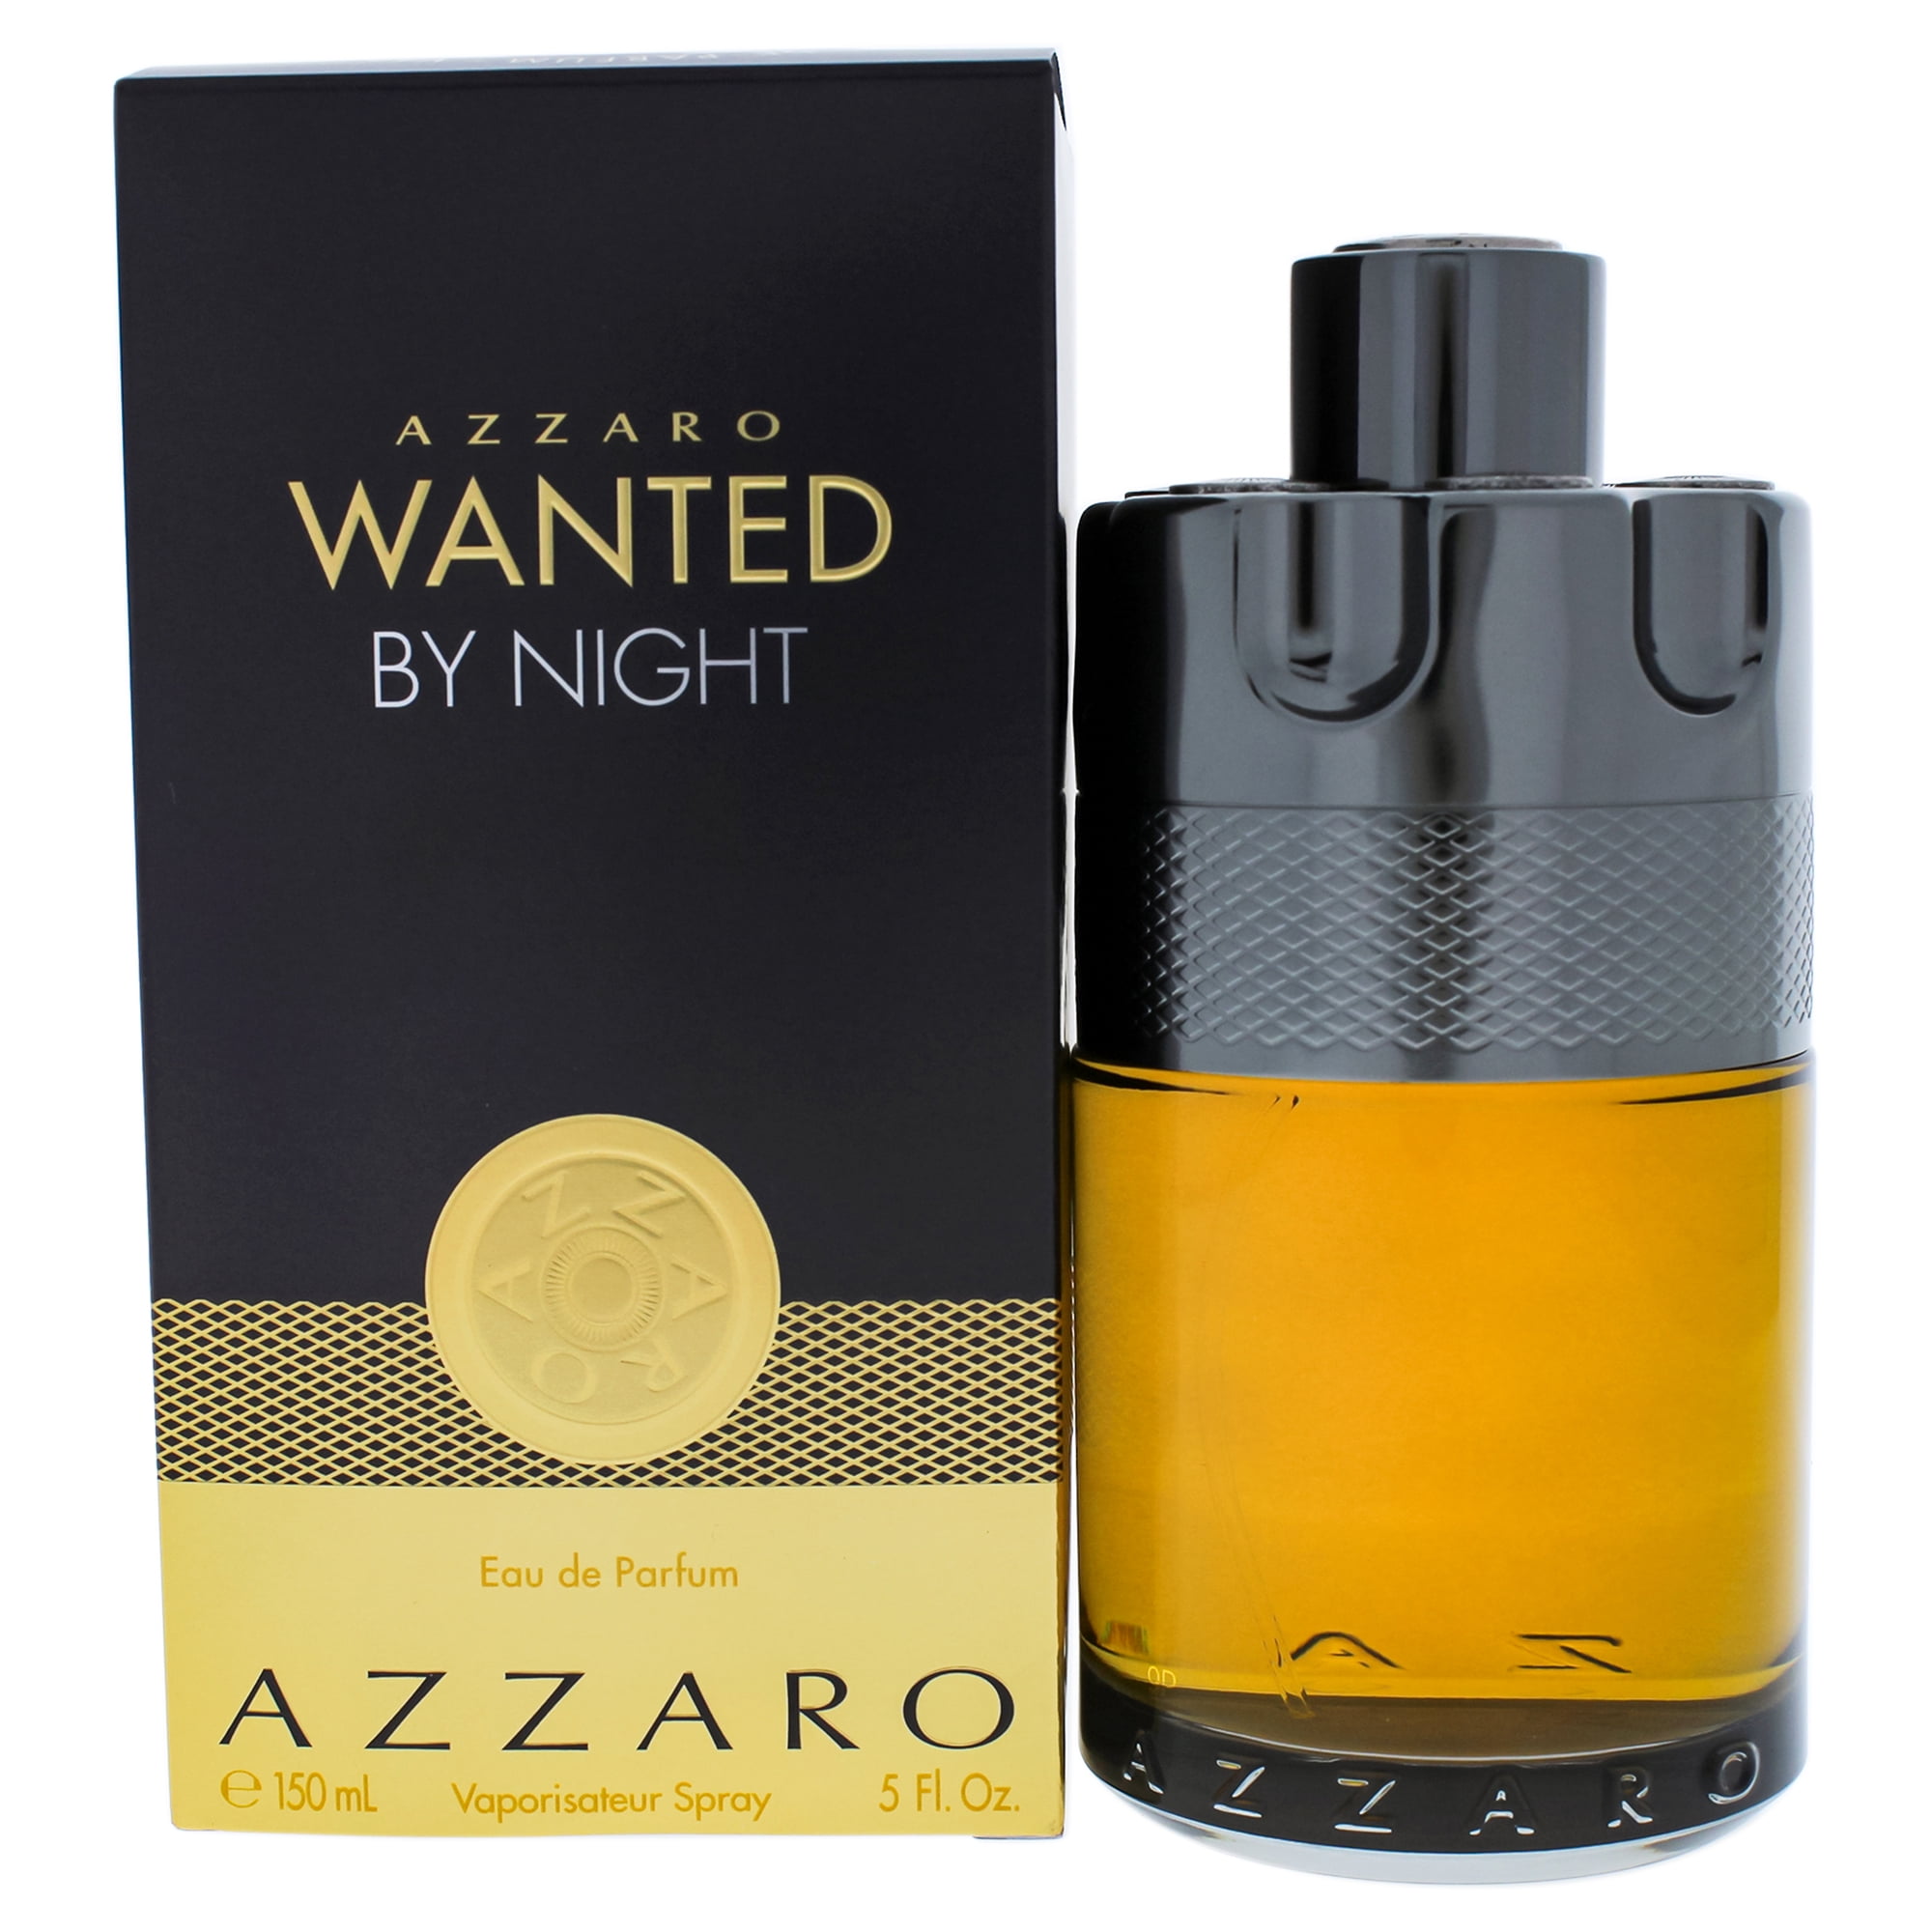 Azzaro Wanted By Night Men's Eau De Parfum Spray - 3.4 fl oz bottle